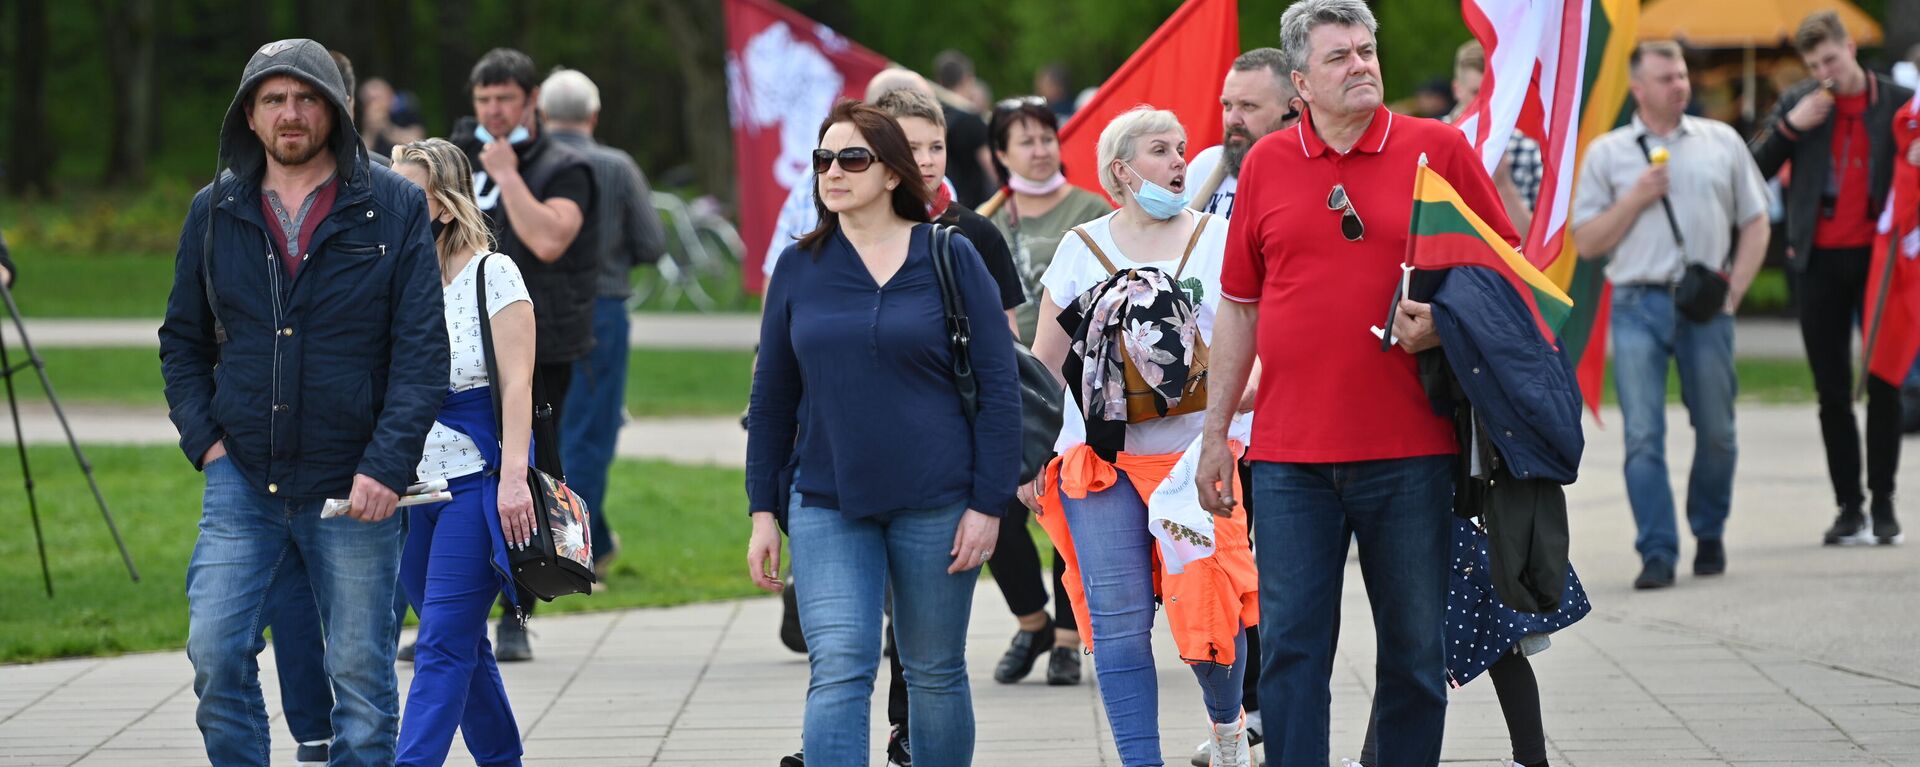 Великий марш в защиту семей в Вильнюсе - Sputnik Литва, 1920, 10.06.2021